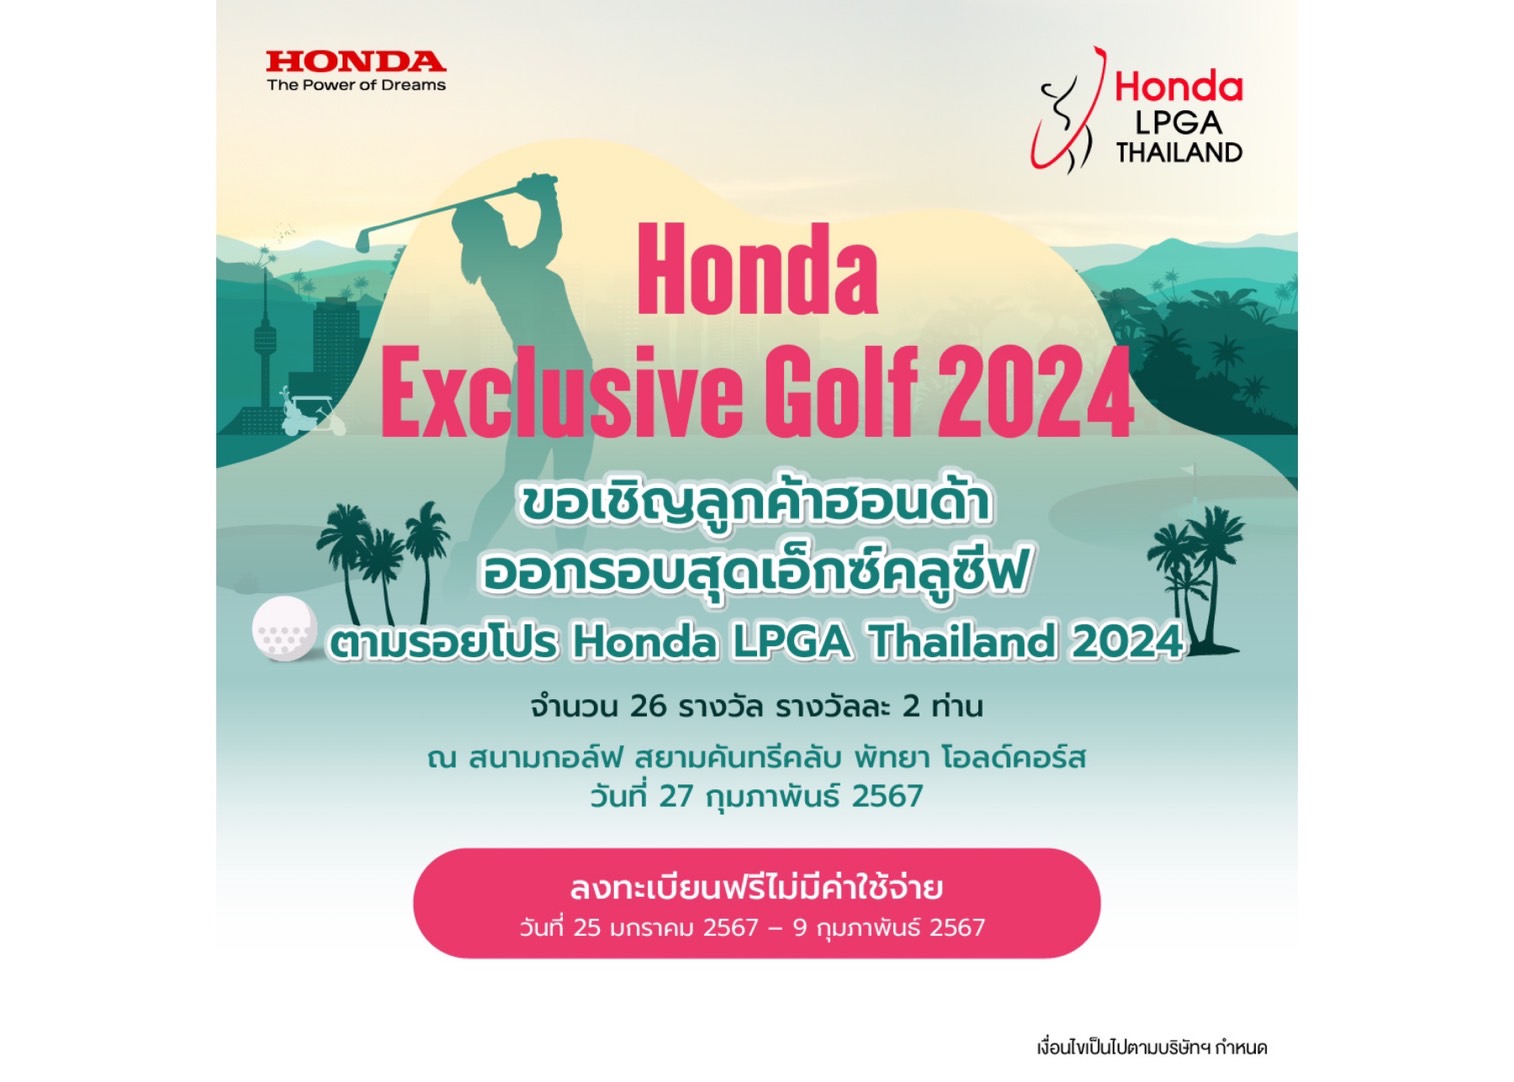 กิจกรรม “Honda Exclusive Golf 2024” เปิดรับสมัครลูกค้าฮอนด้าร่วมลุ้นสิทธิ์ออกรอบตามรอยโปรกอล์ฟระดับโลก รายการ ฮอนด้า แอลพีจีเอ ไทยแลนด์ 2024